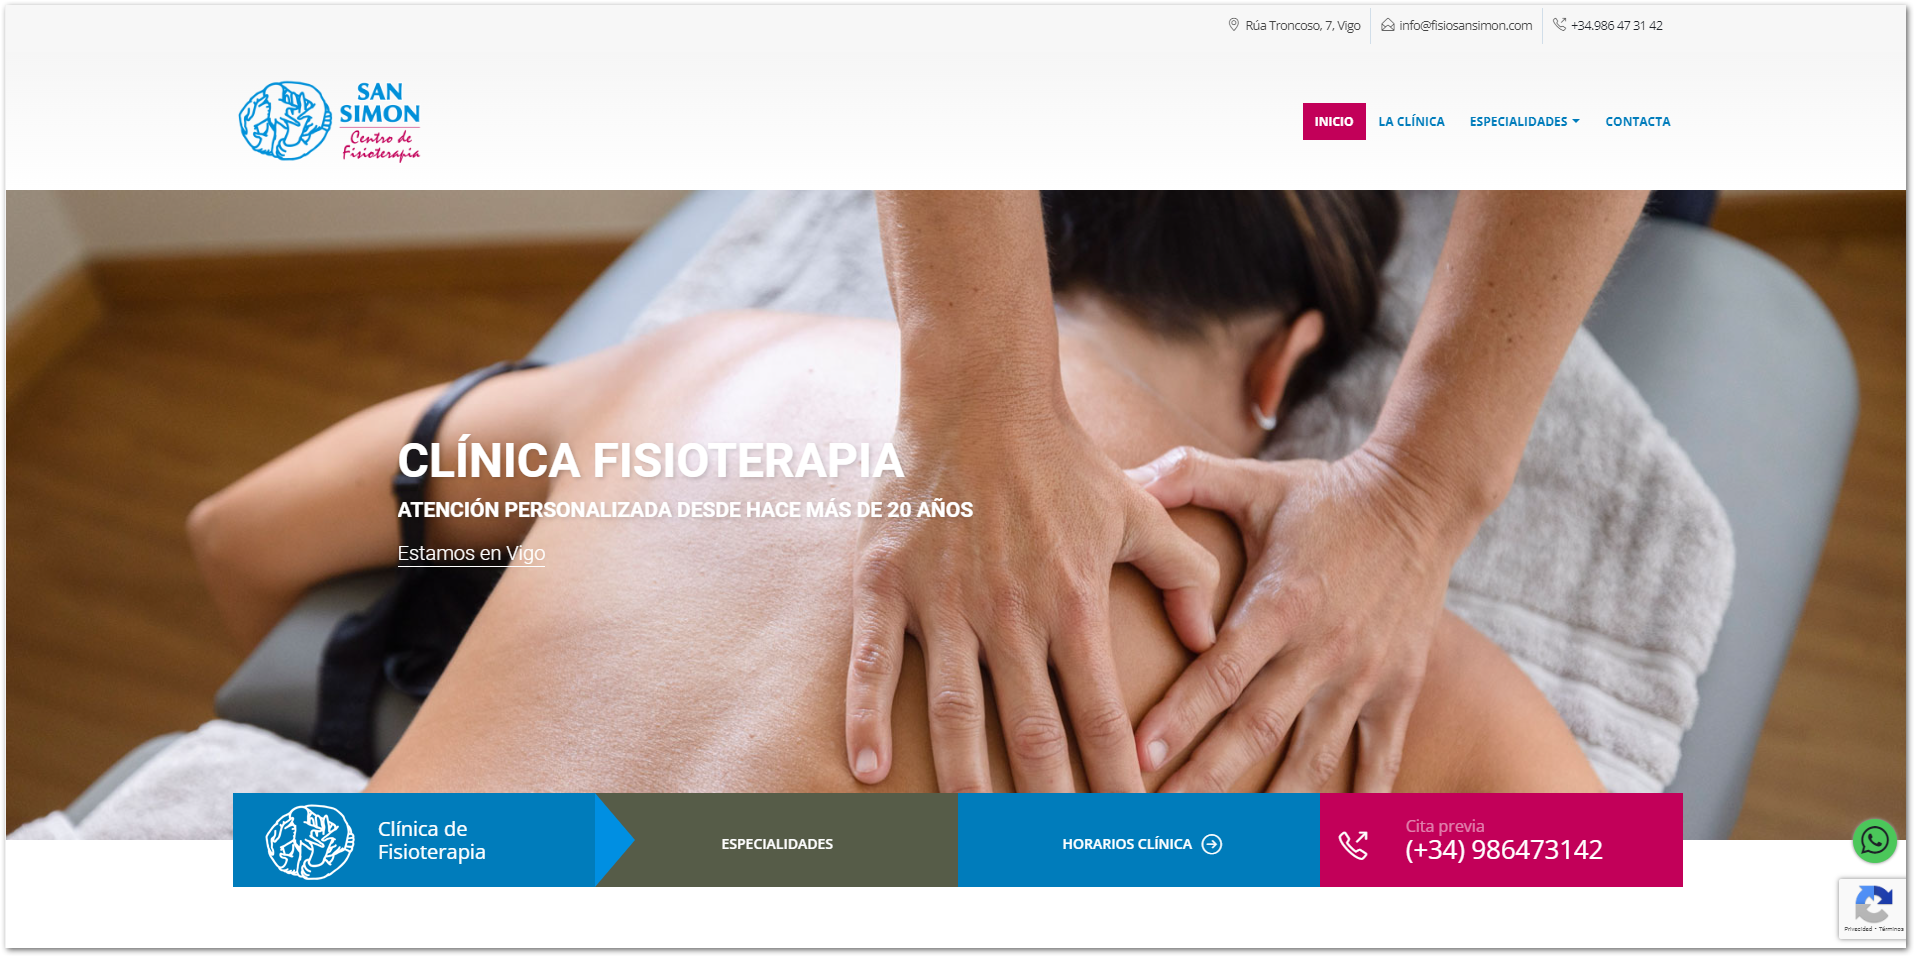 Nuevo diseño web para la Clínica de Fisioterapia San Simón de Vigo